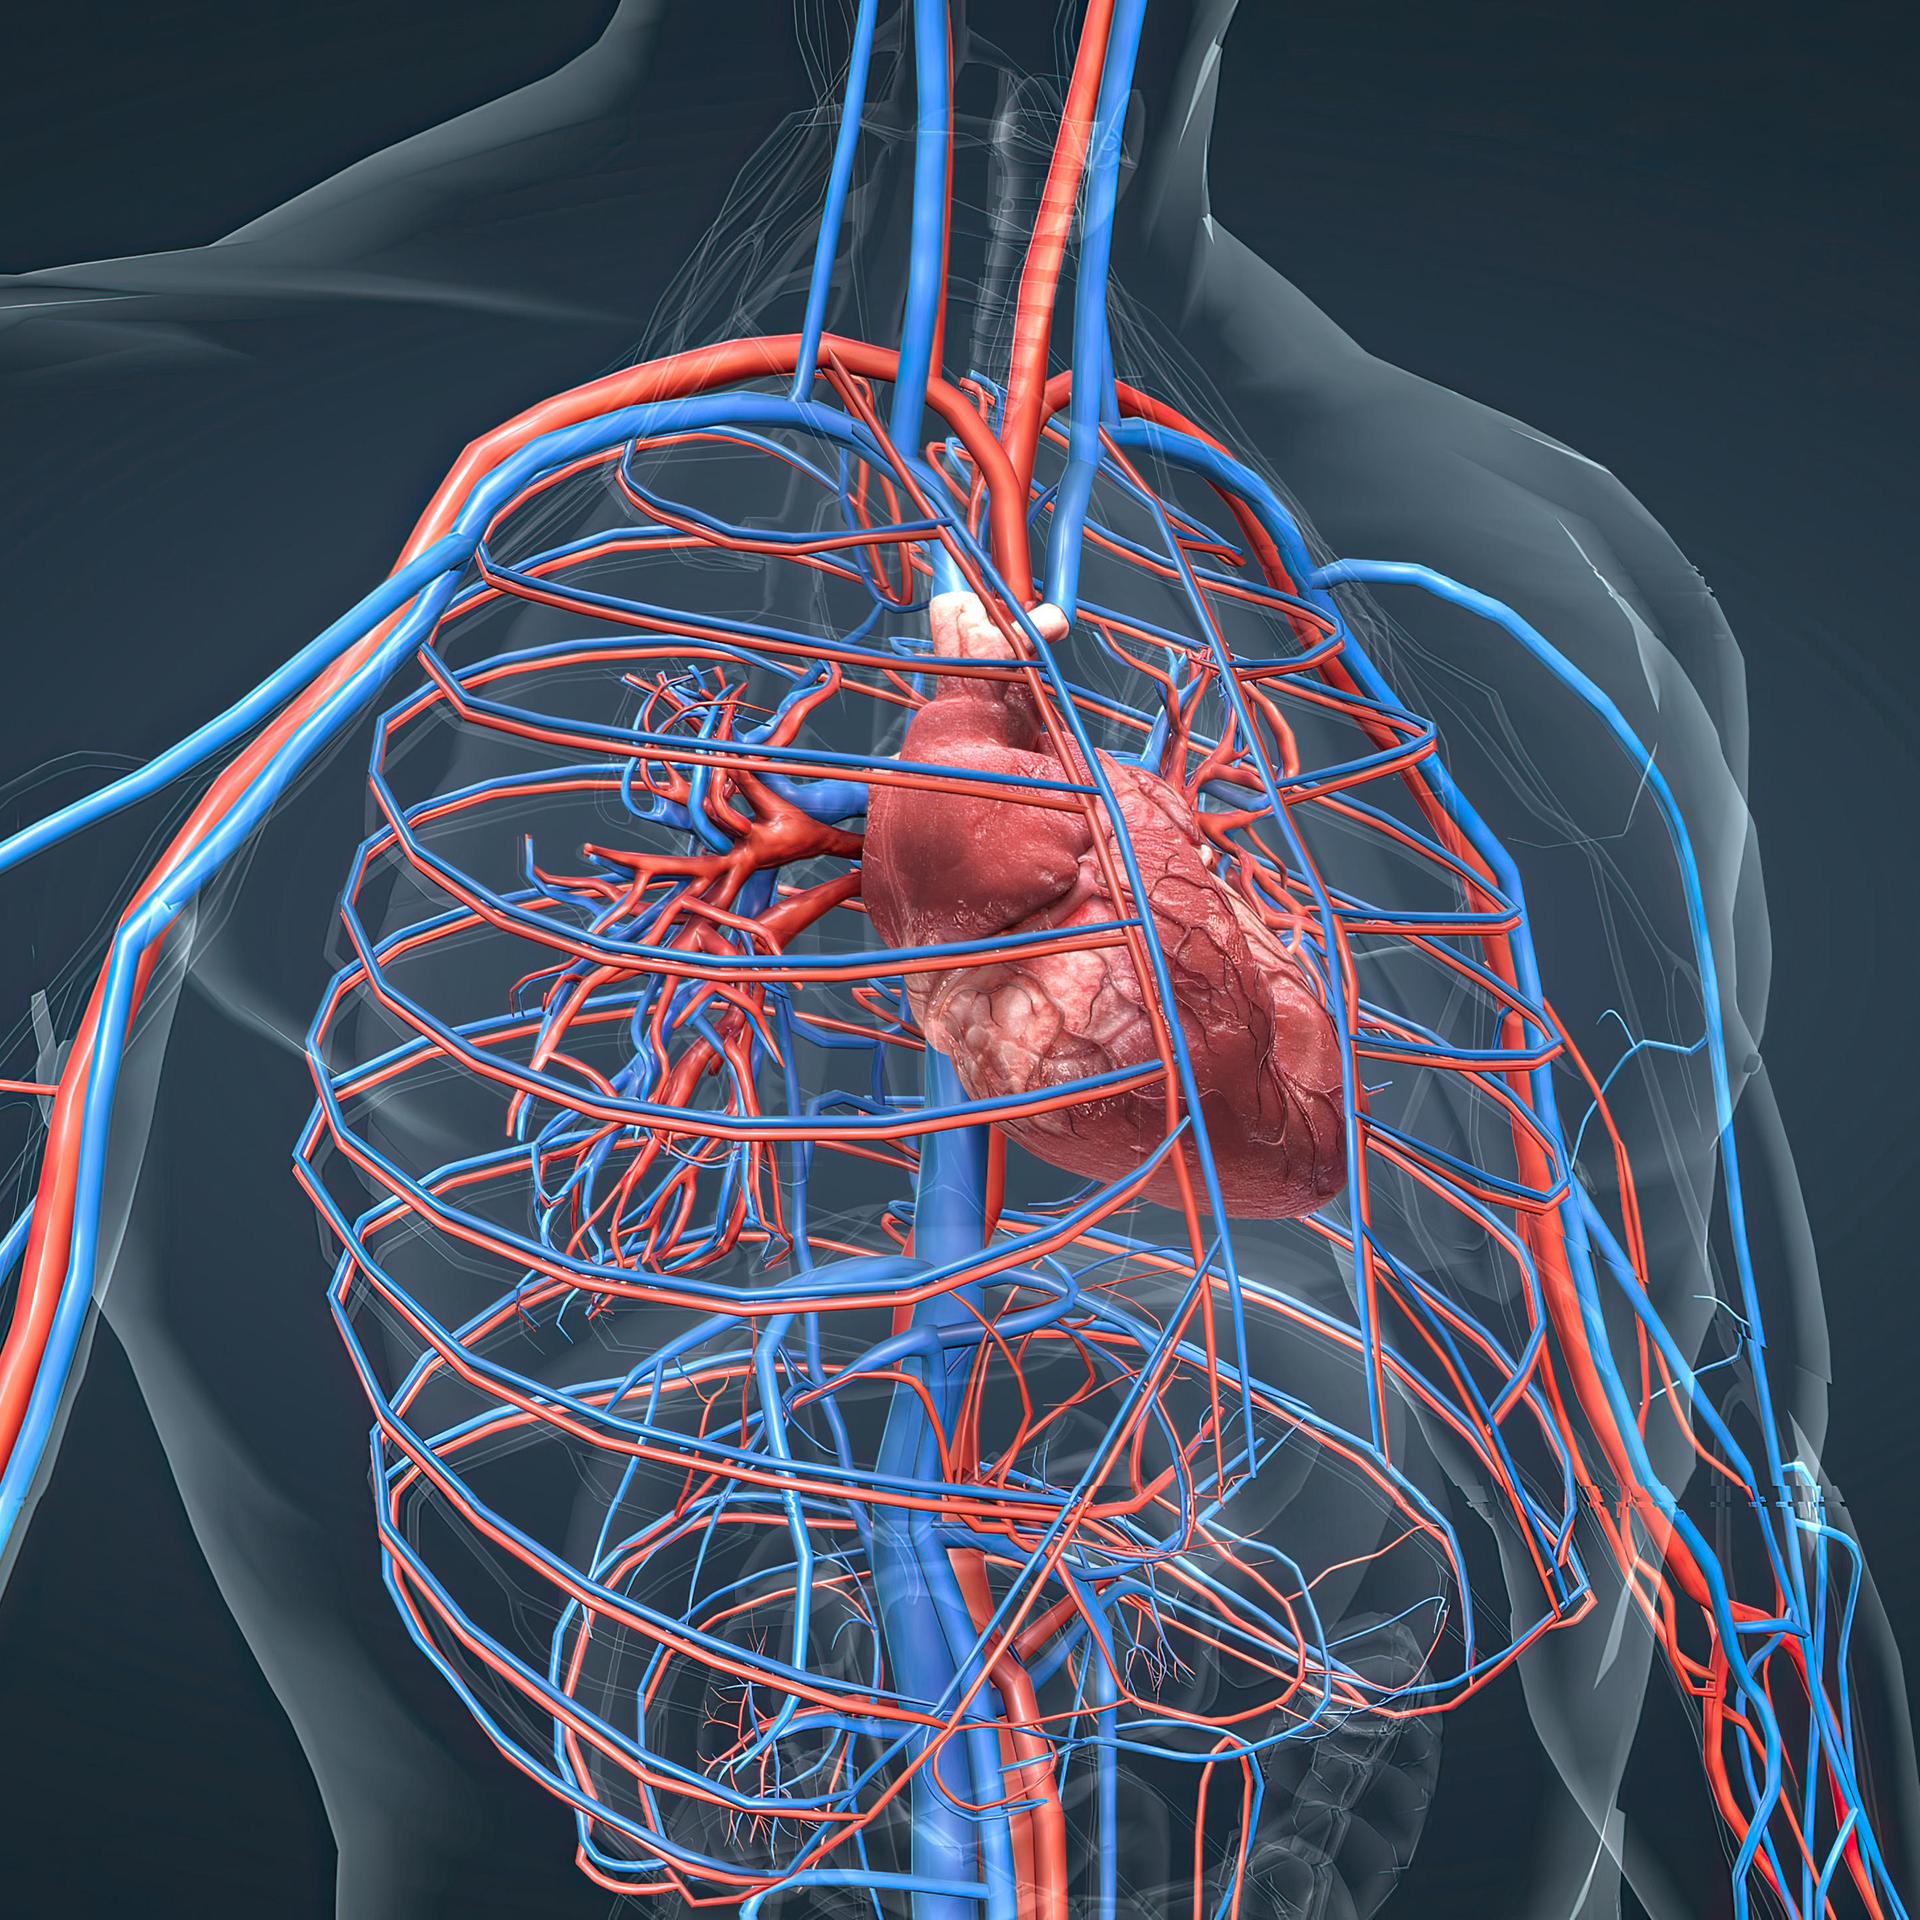 Eine grafische Darstellung zeigt das Herz und die Blutgefäße eines Menschen.